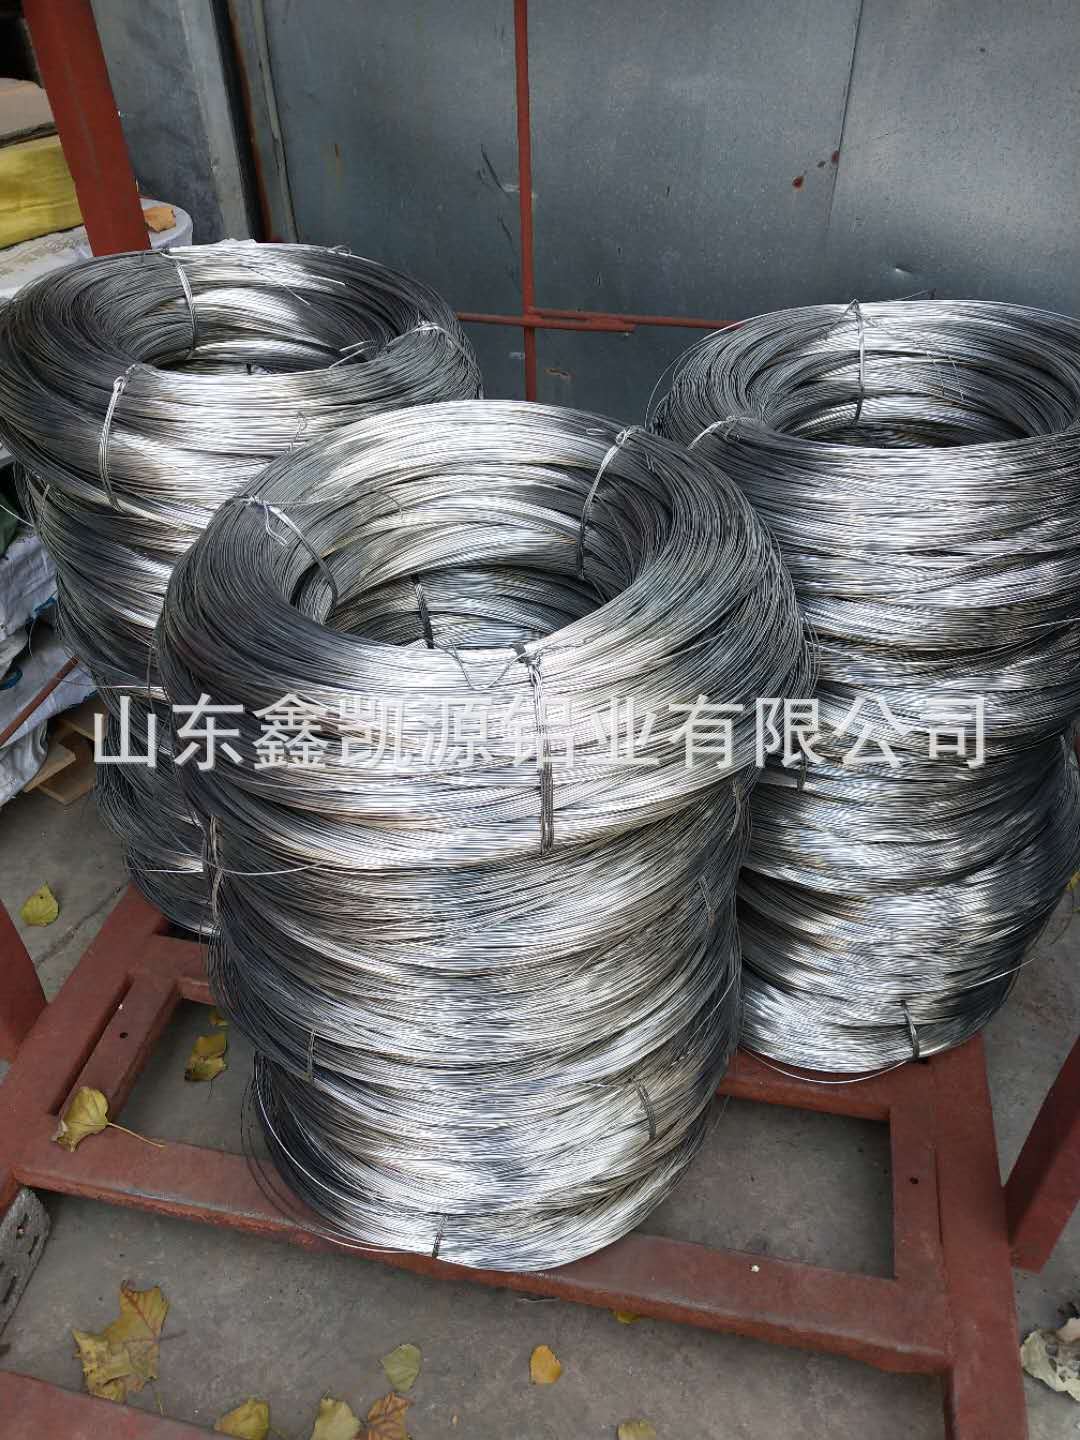 山东厂家供应纯铝柳钉铝线电工圆铝线 6063铝线6061铝线